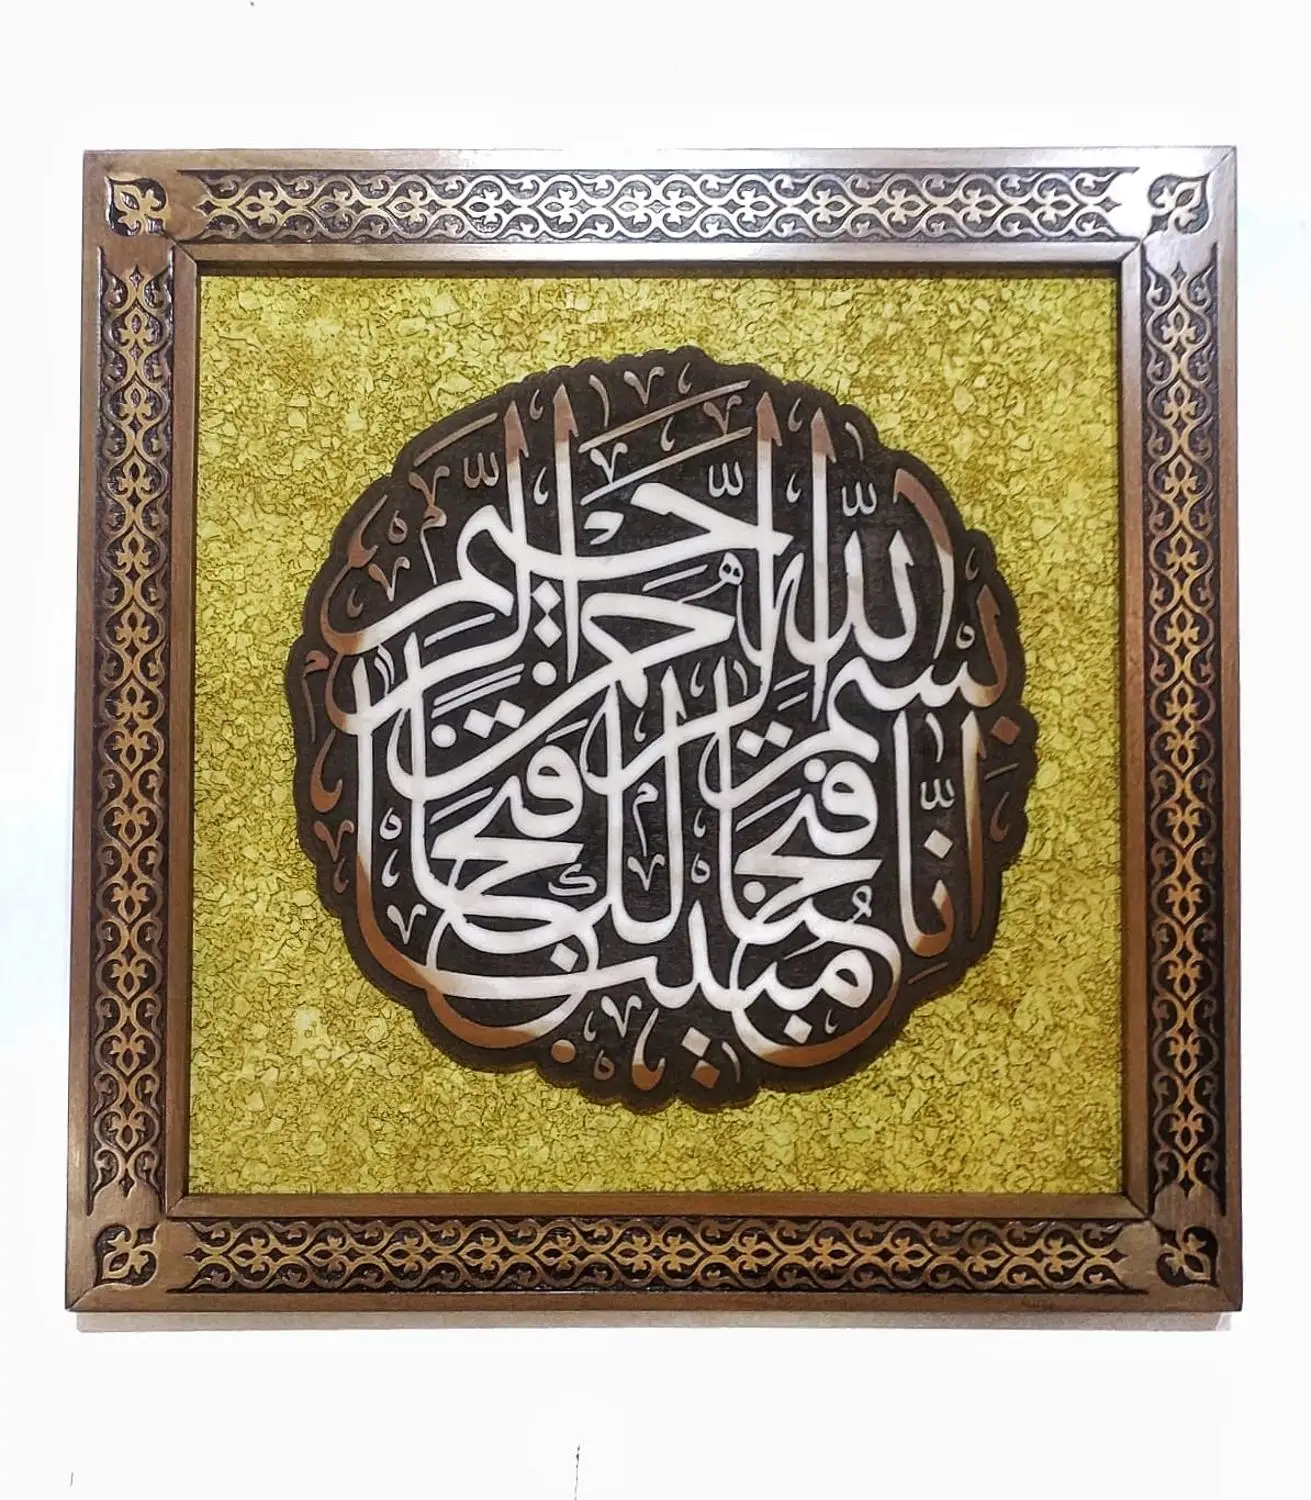 Drevené Rámové feth súra اِنَّا فَتَحْنَا لَكَ فَتْحًا مُب۪ي Islamskej Maľovanie Kaligrafie Dreva Úľavu 40x40 cm Vyrobené v Turecku